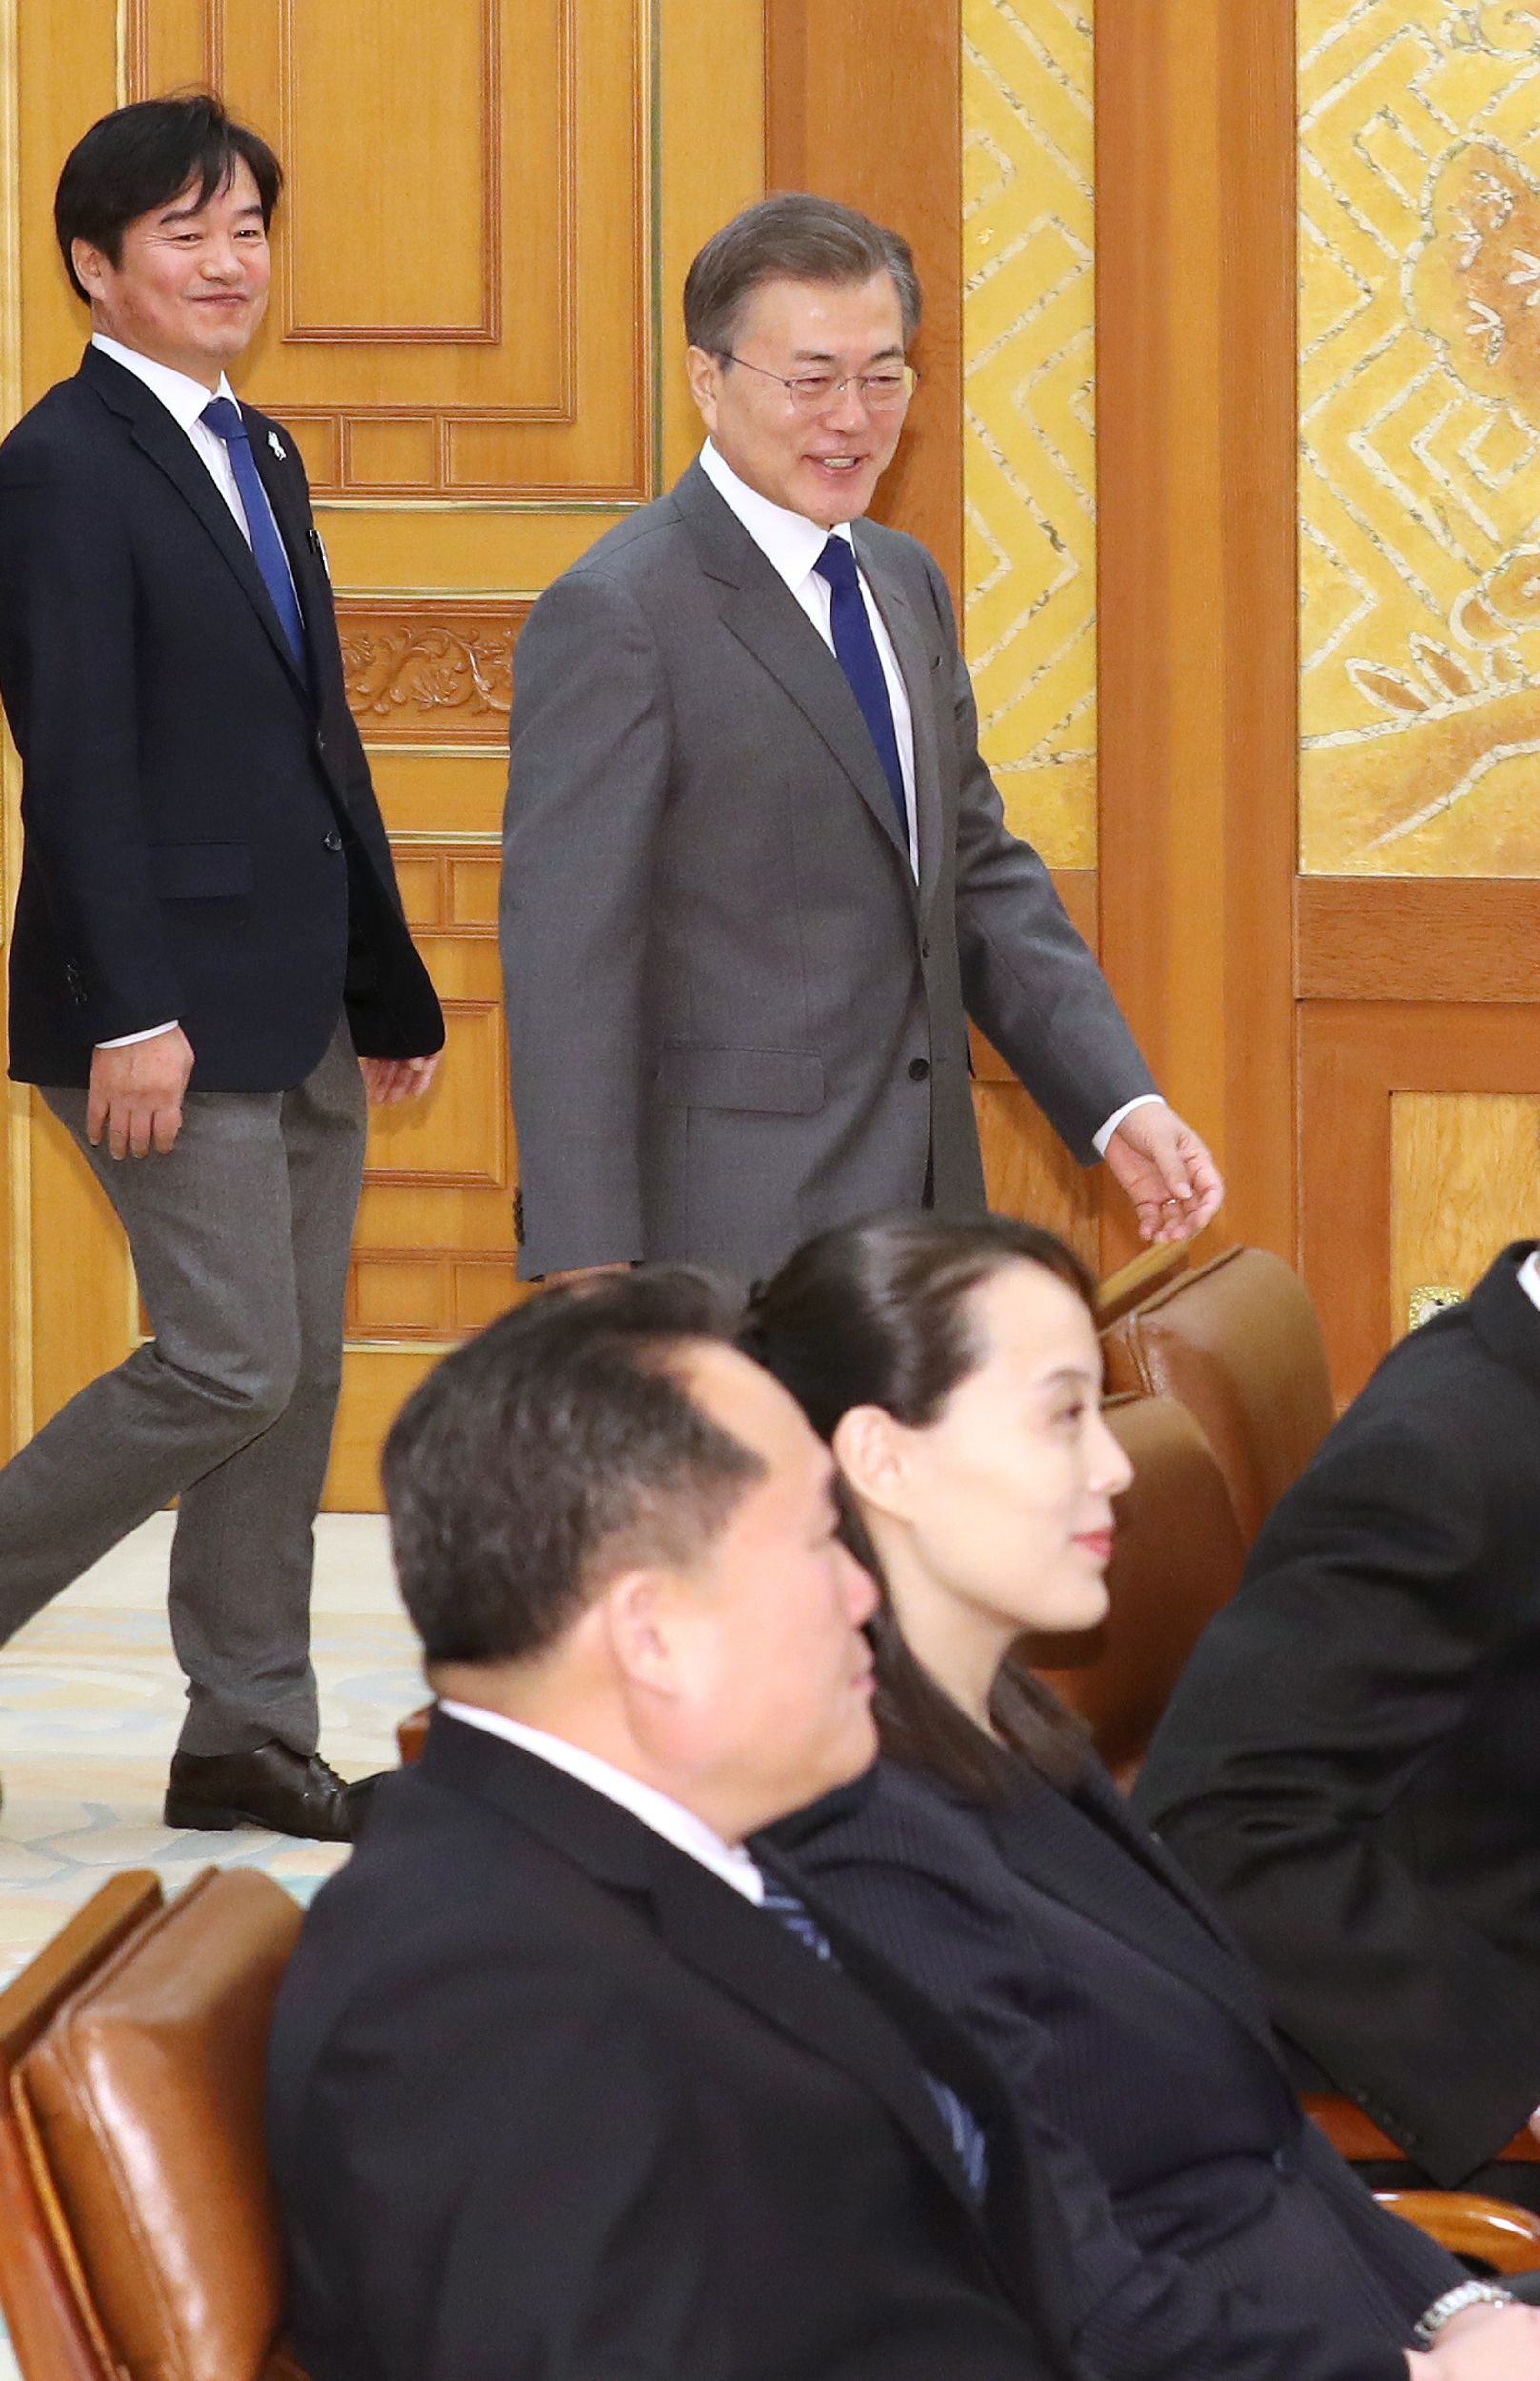 دخول رئيس كوريا الجنوبية لحضور اللقاء